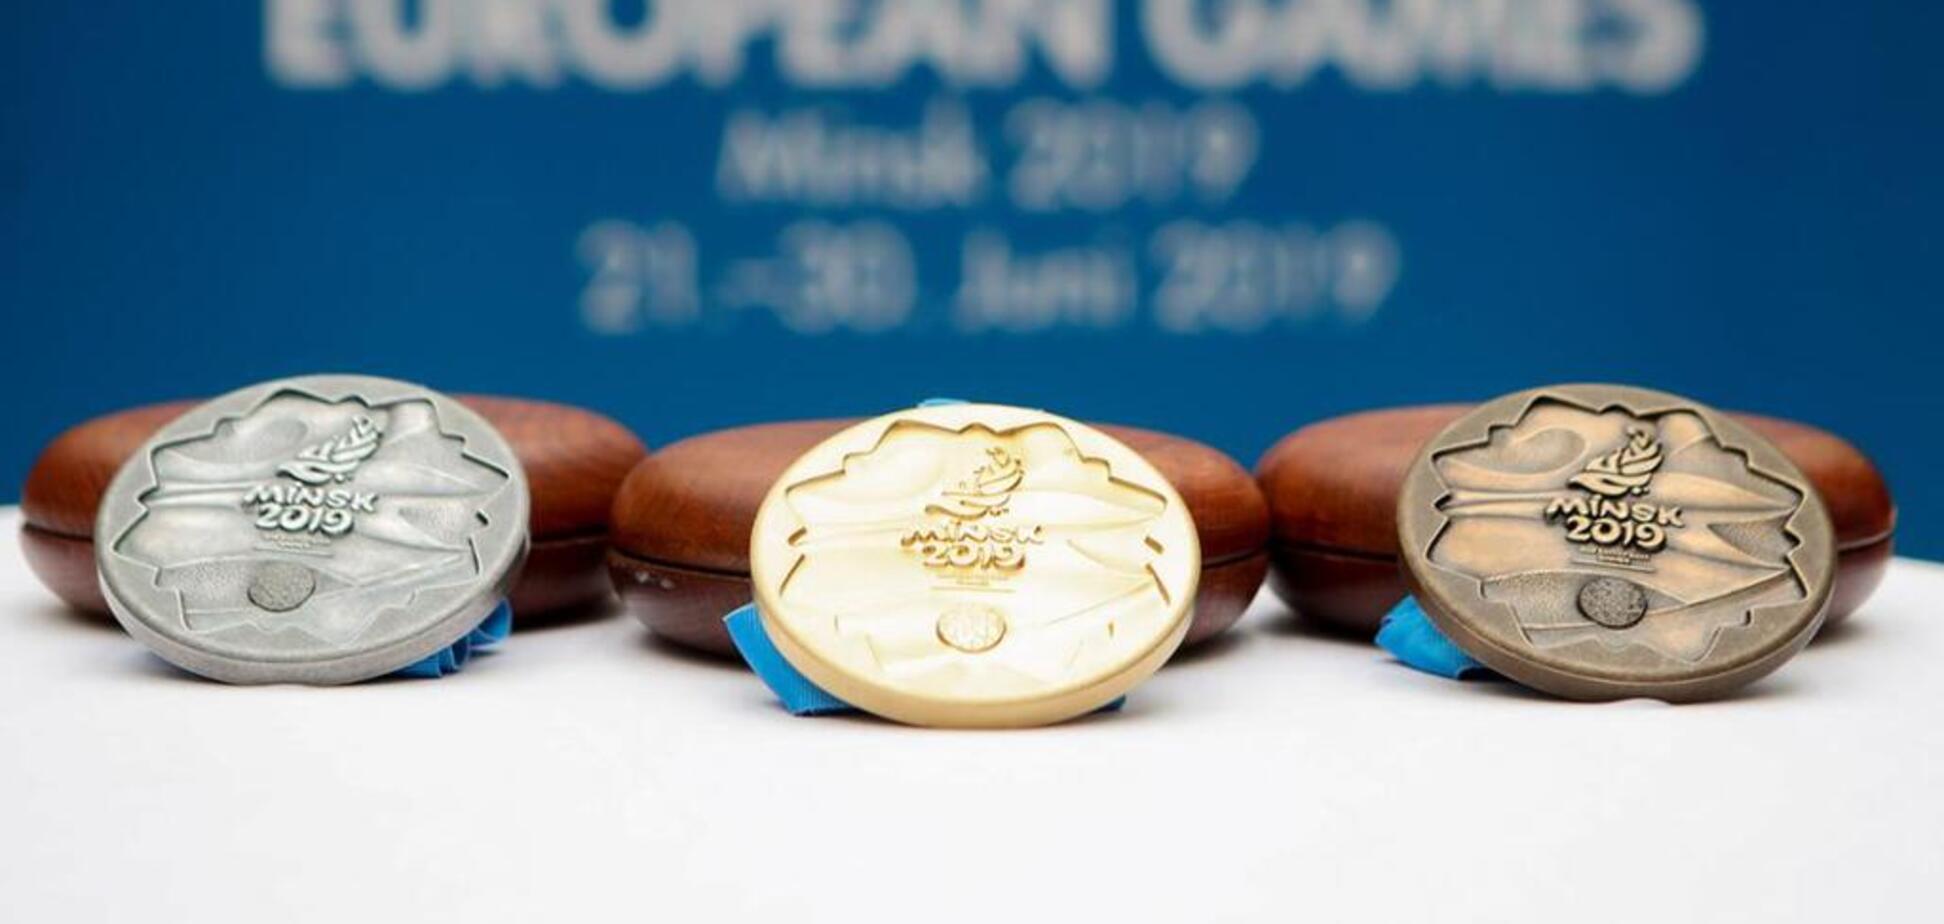 Украина в тройке лучших! Итоговый медальный зачет Европейских игр-2019